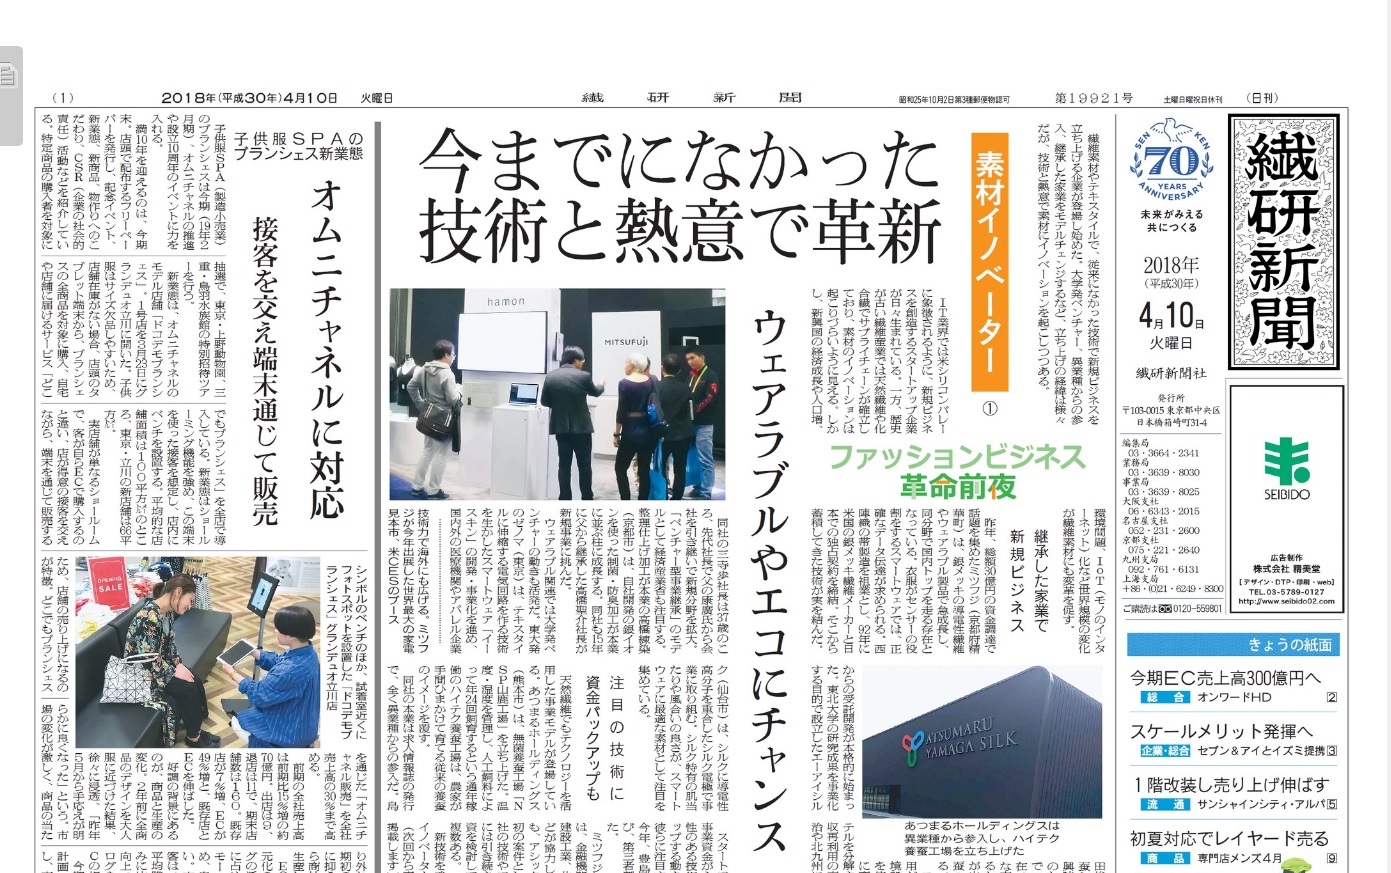 繊研新聞18年4月10日 火 に印象コラム掲載 リリア株式会社